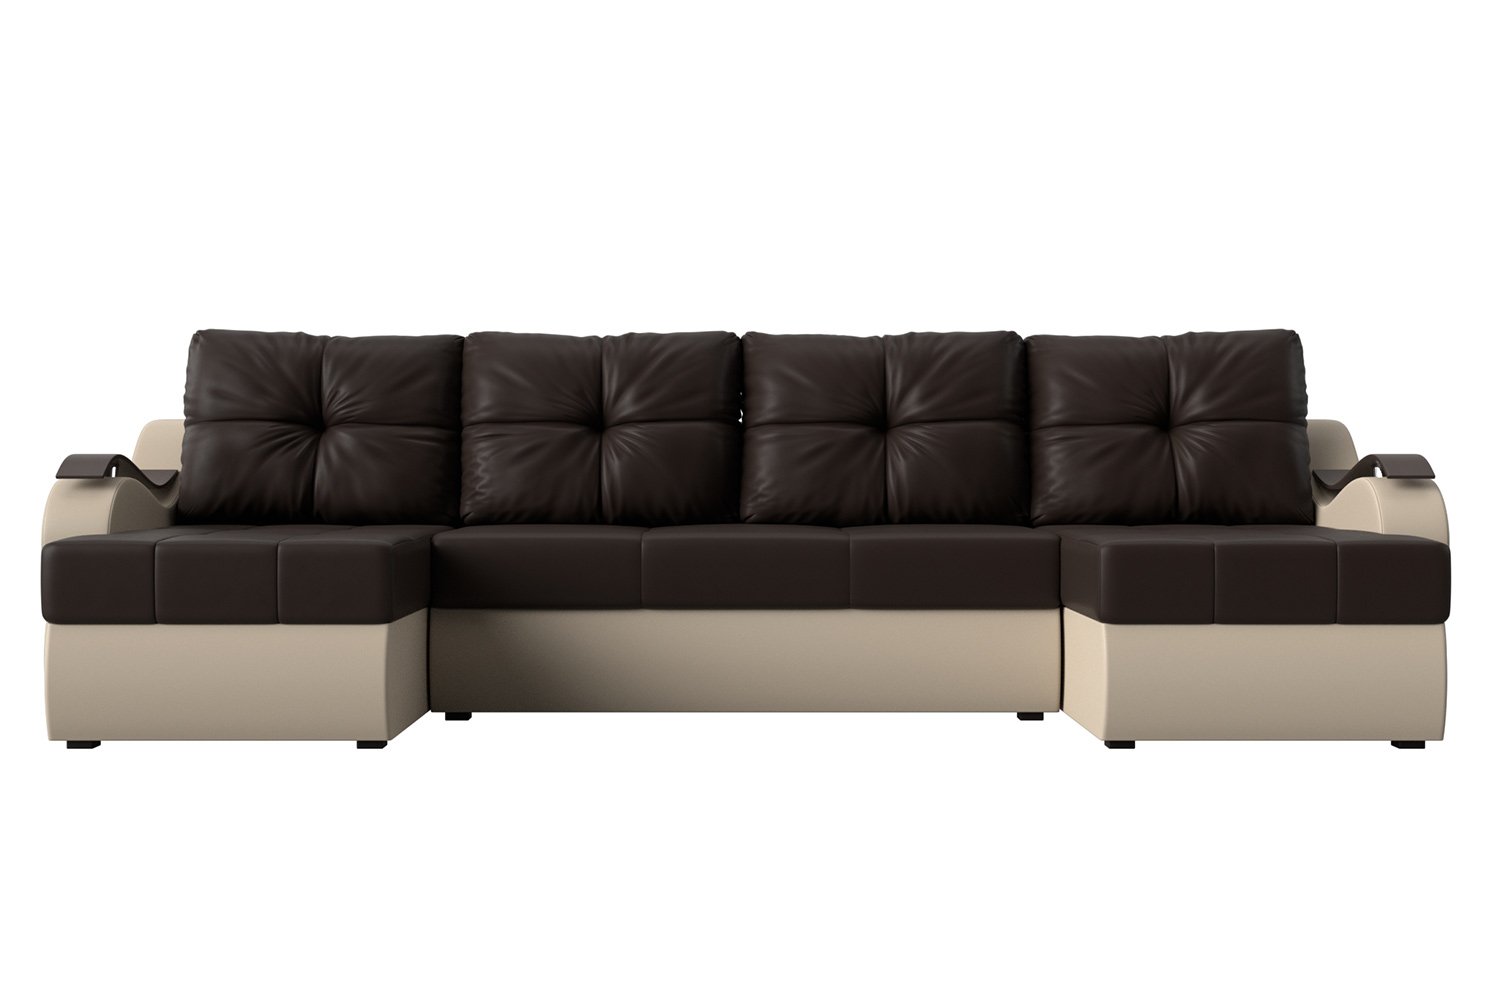 П образный диван коричневый с бежевым